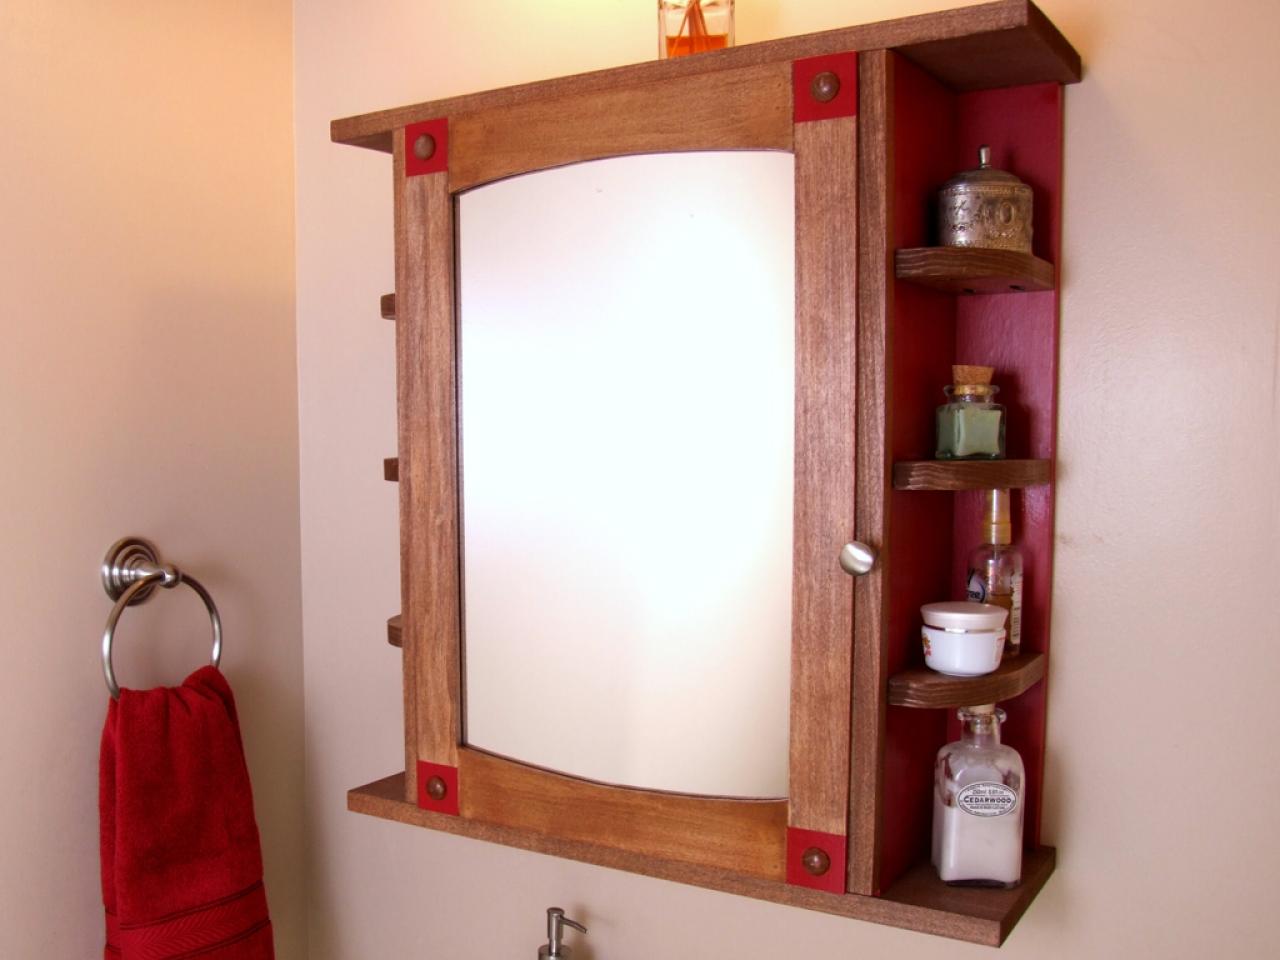 How To Build A Bathroom Medicine Cabinet Tos Diy - Small Bathroom Medicine Cabinet Ideas